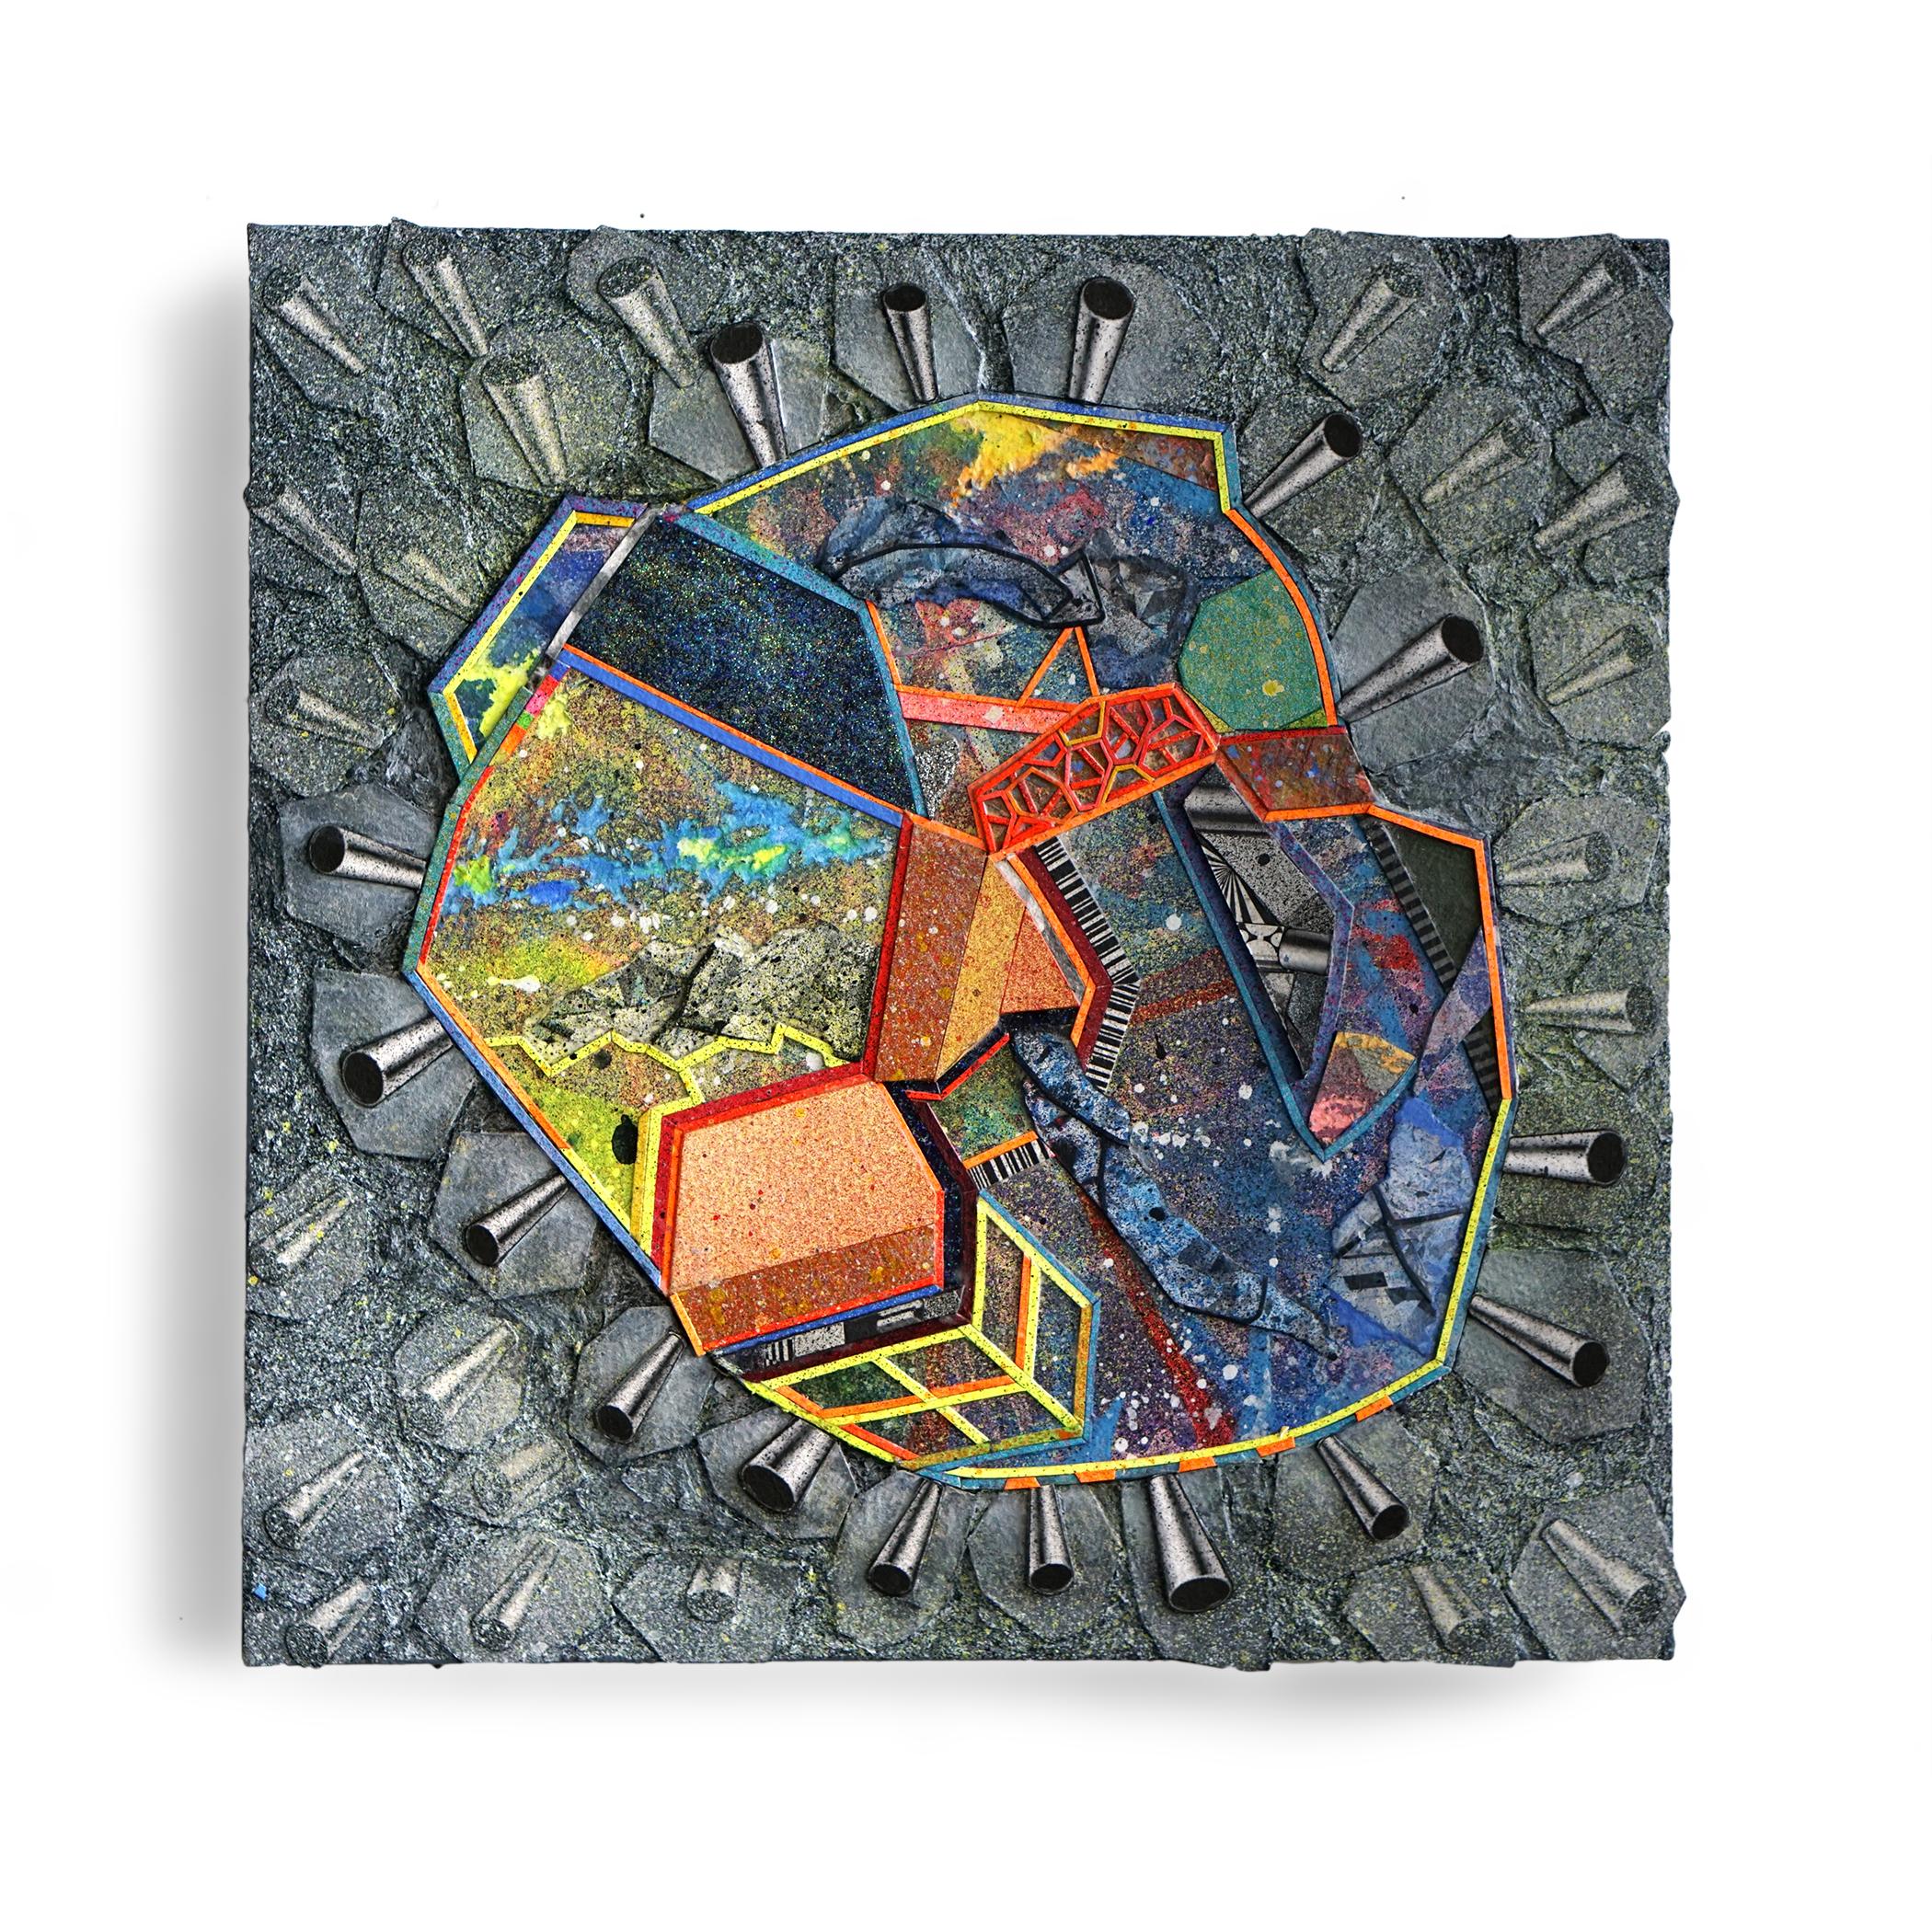 Nancy Baker, Cave, 2018, peinture, collage sur carton, 30,4 x 30,4 cm